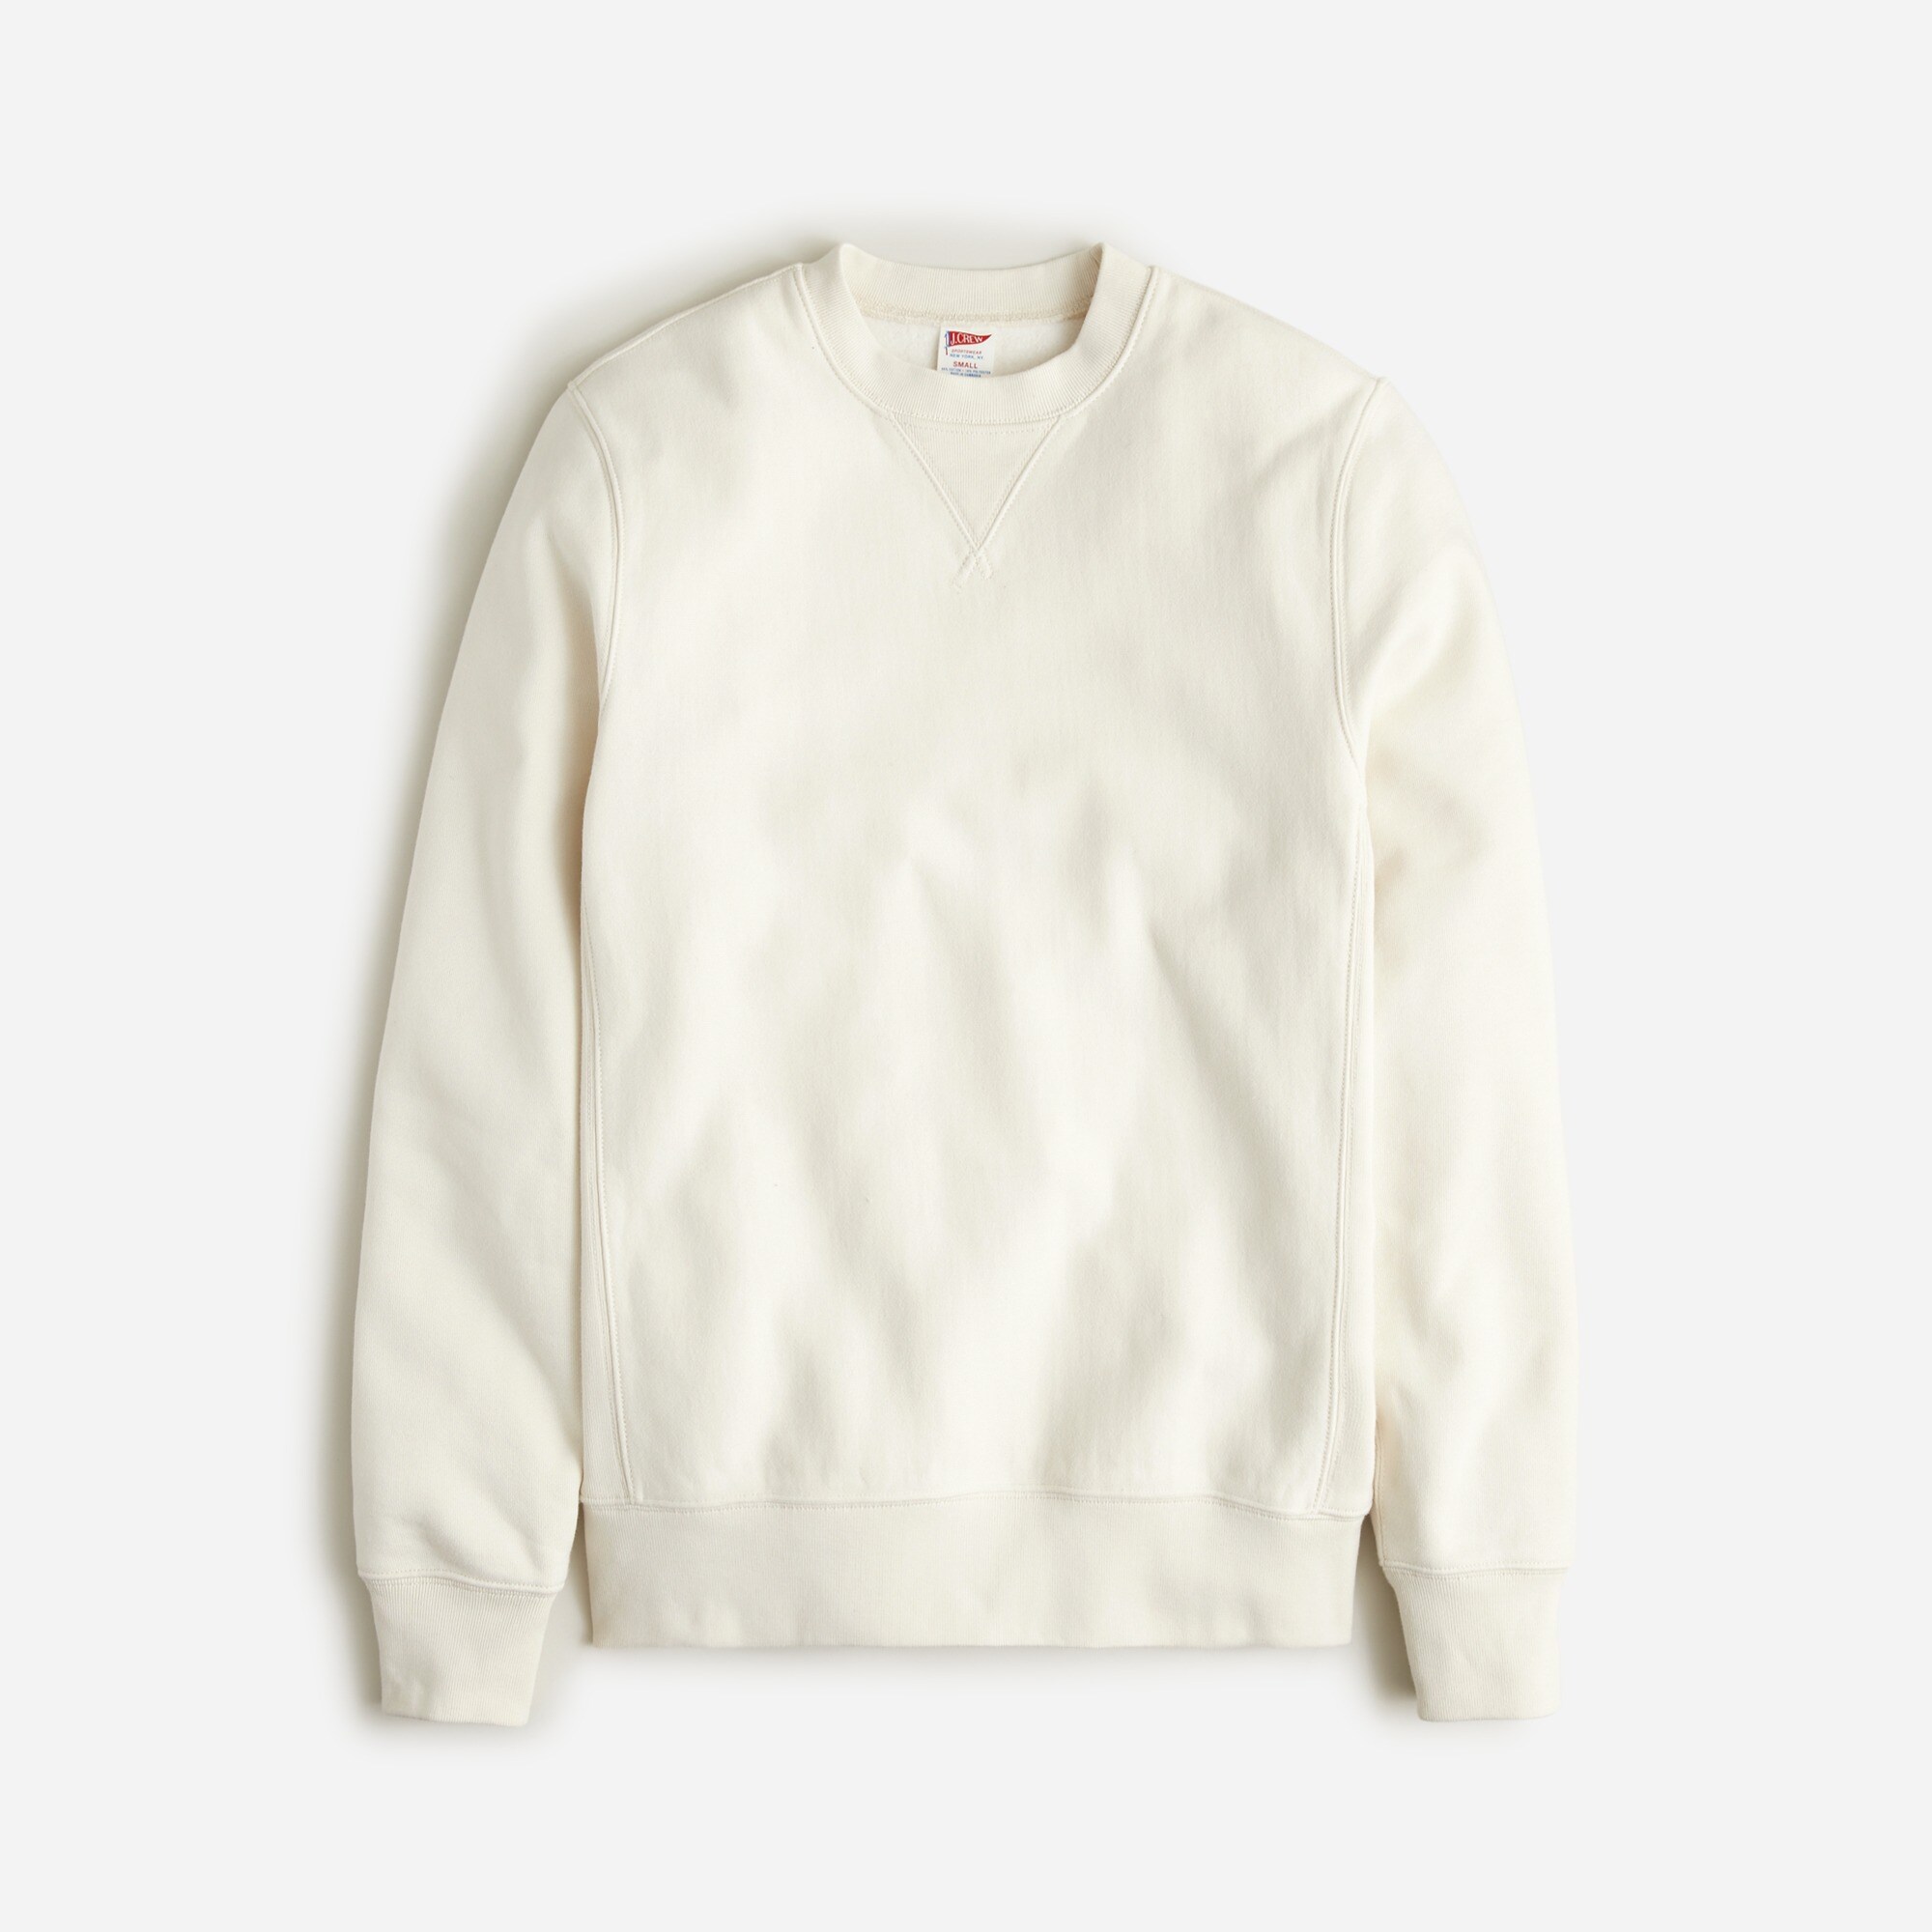  Heritage 14 oz. fleece sweatshirt